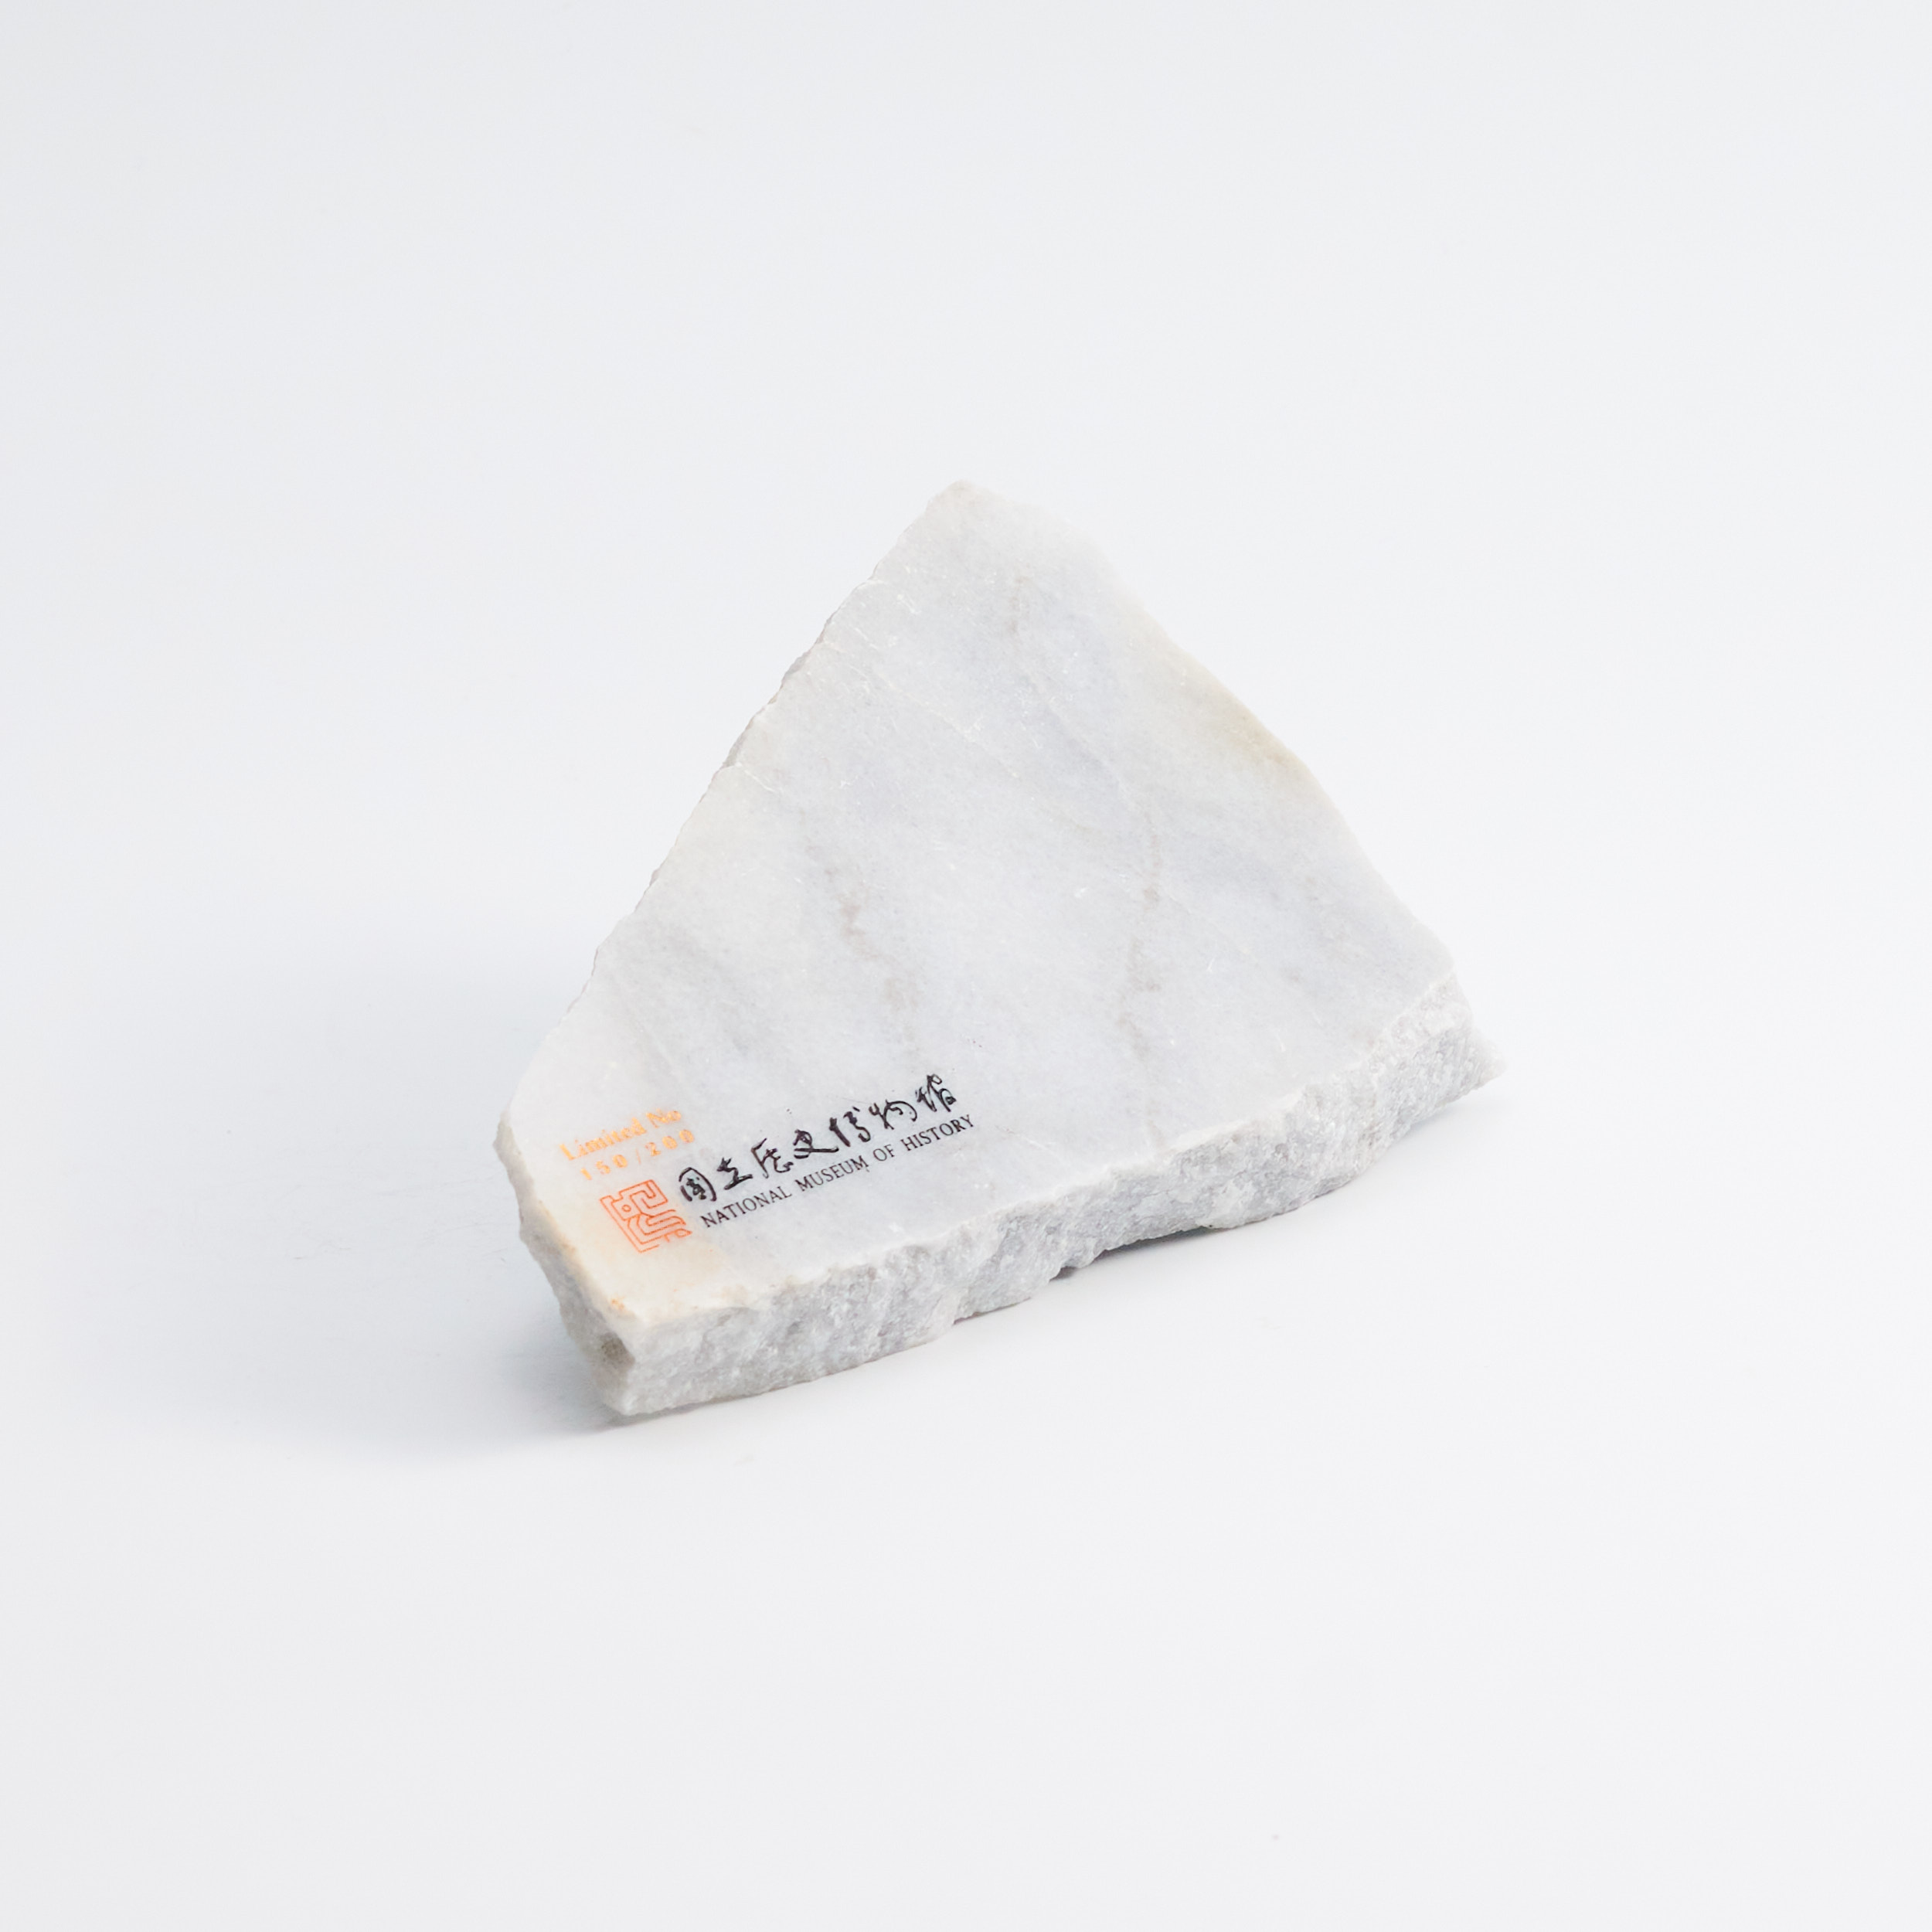 質感大理石小盤NO.150(限量收藏版) marble plate NO.150